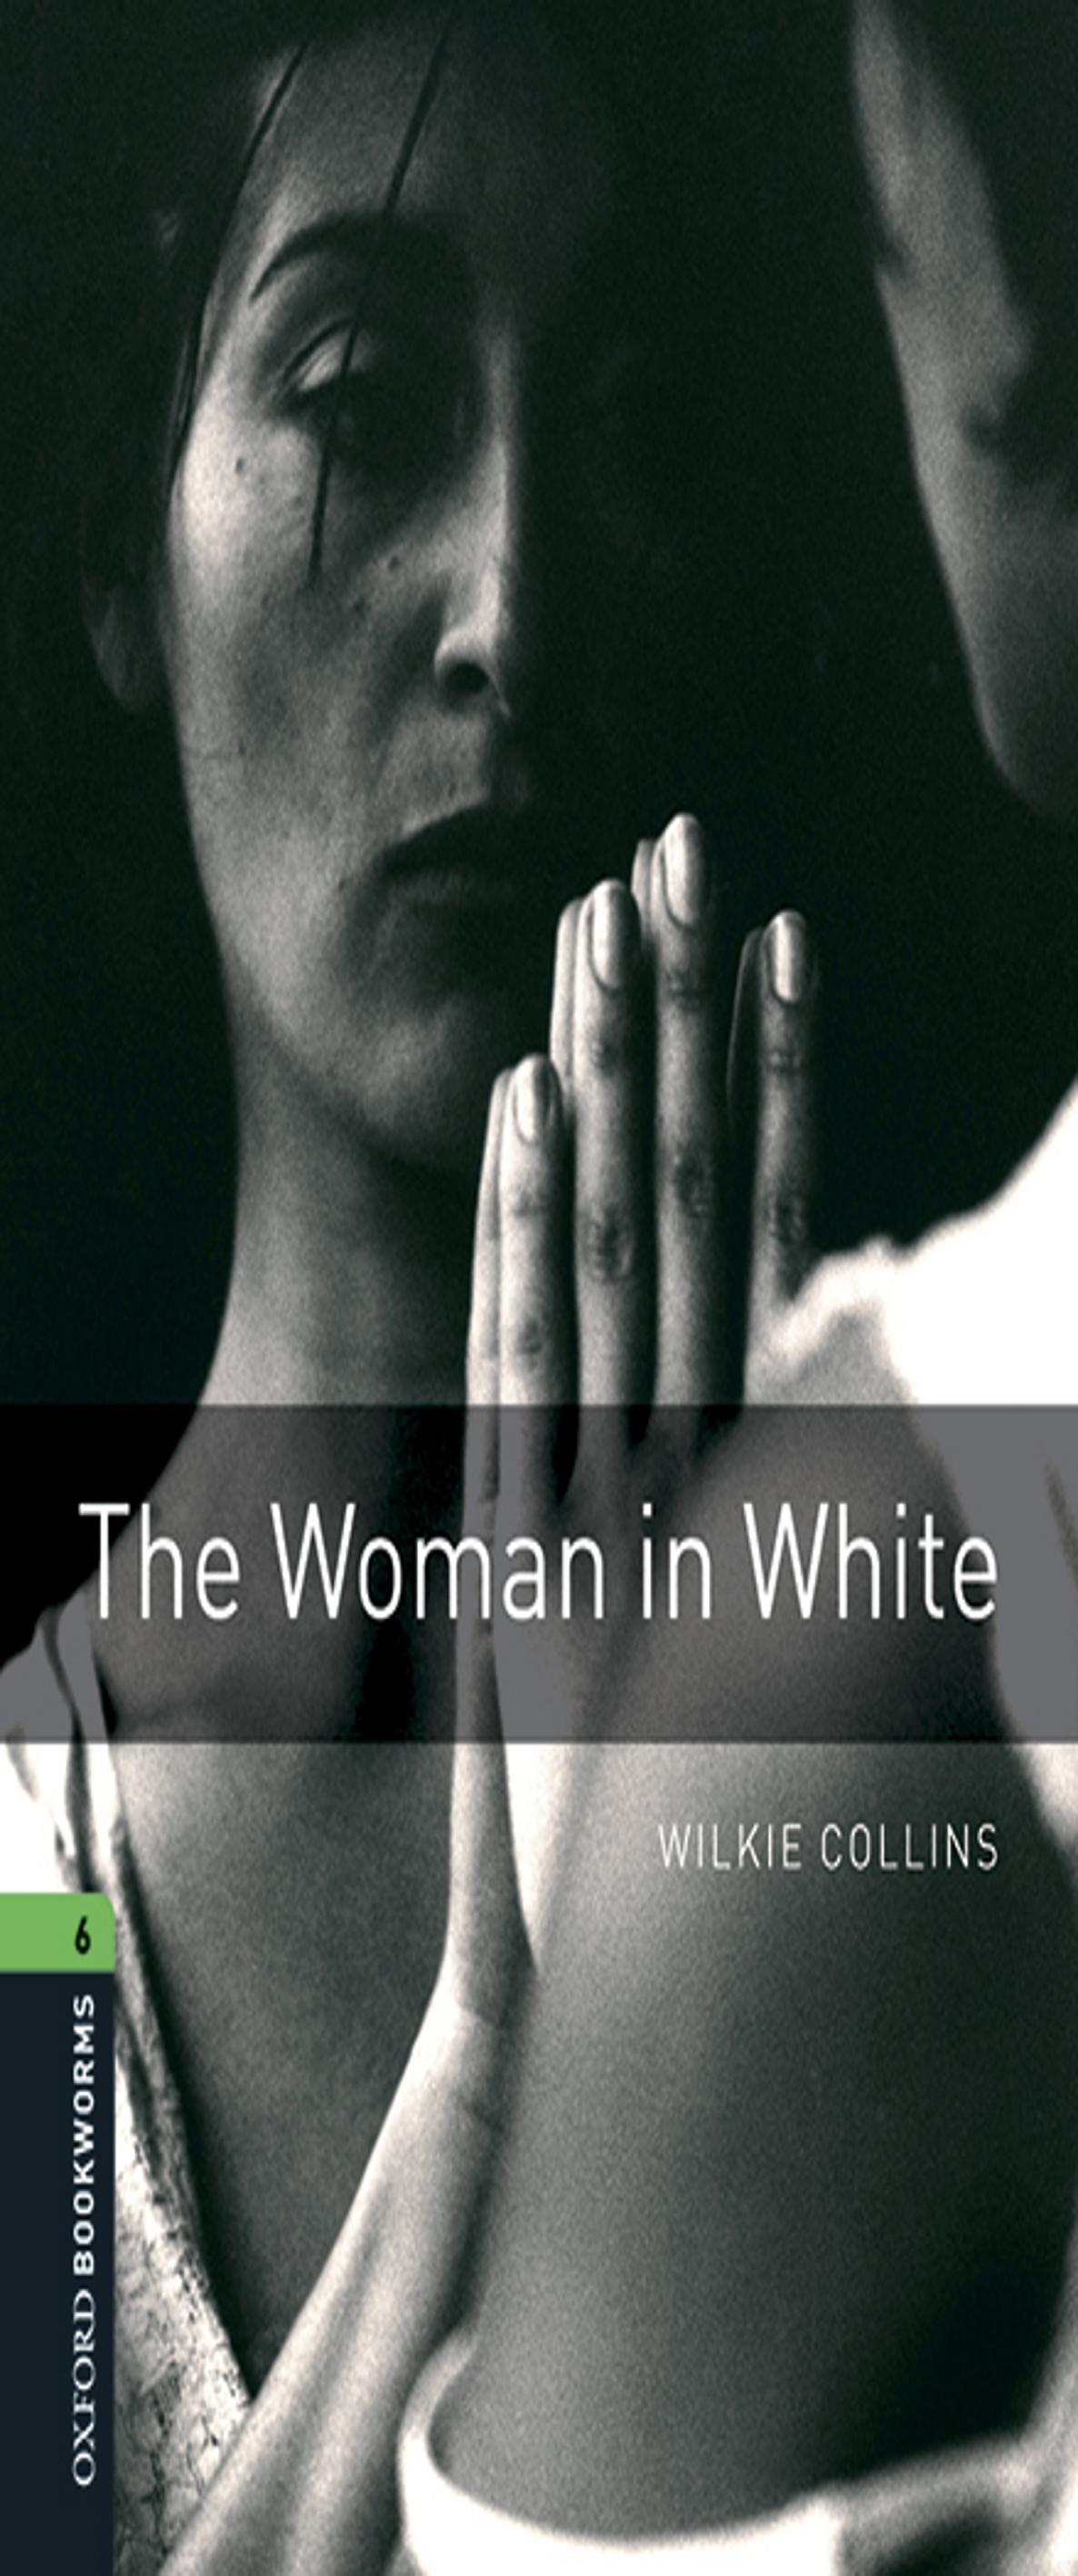 OBL 6 WOMAN IN WHITE MP3 PK